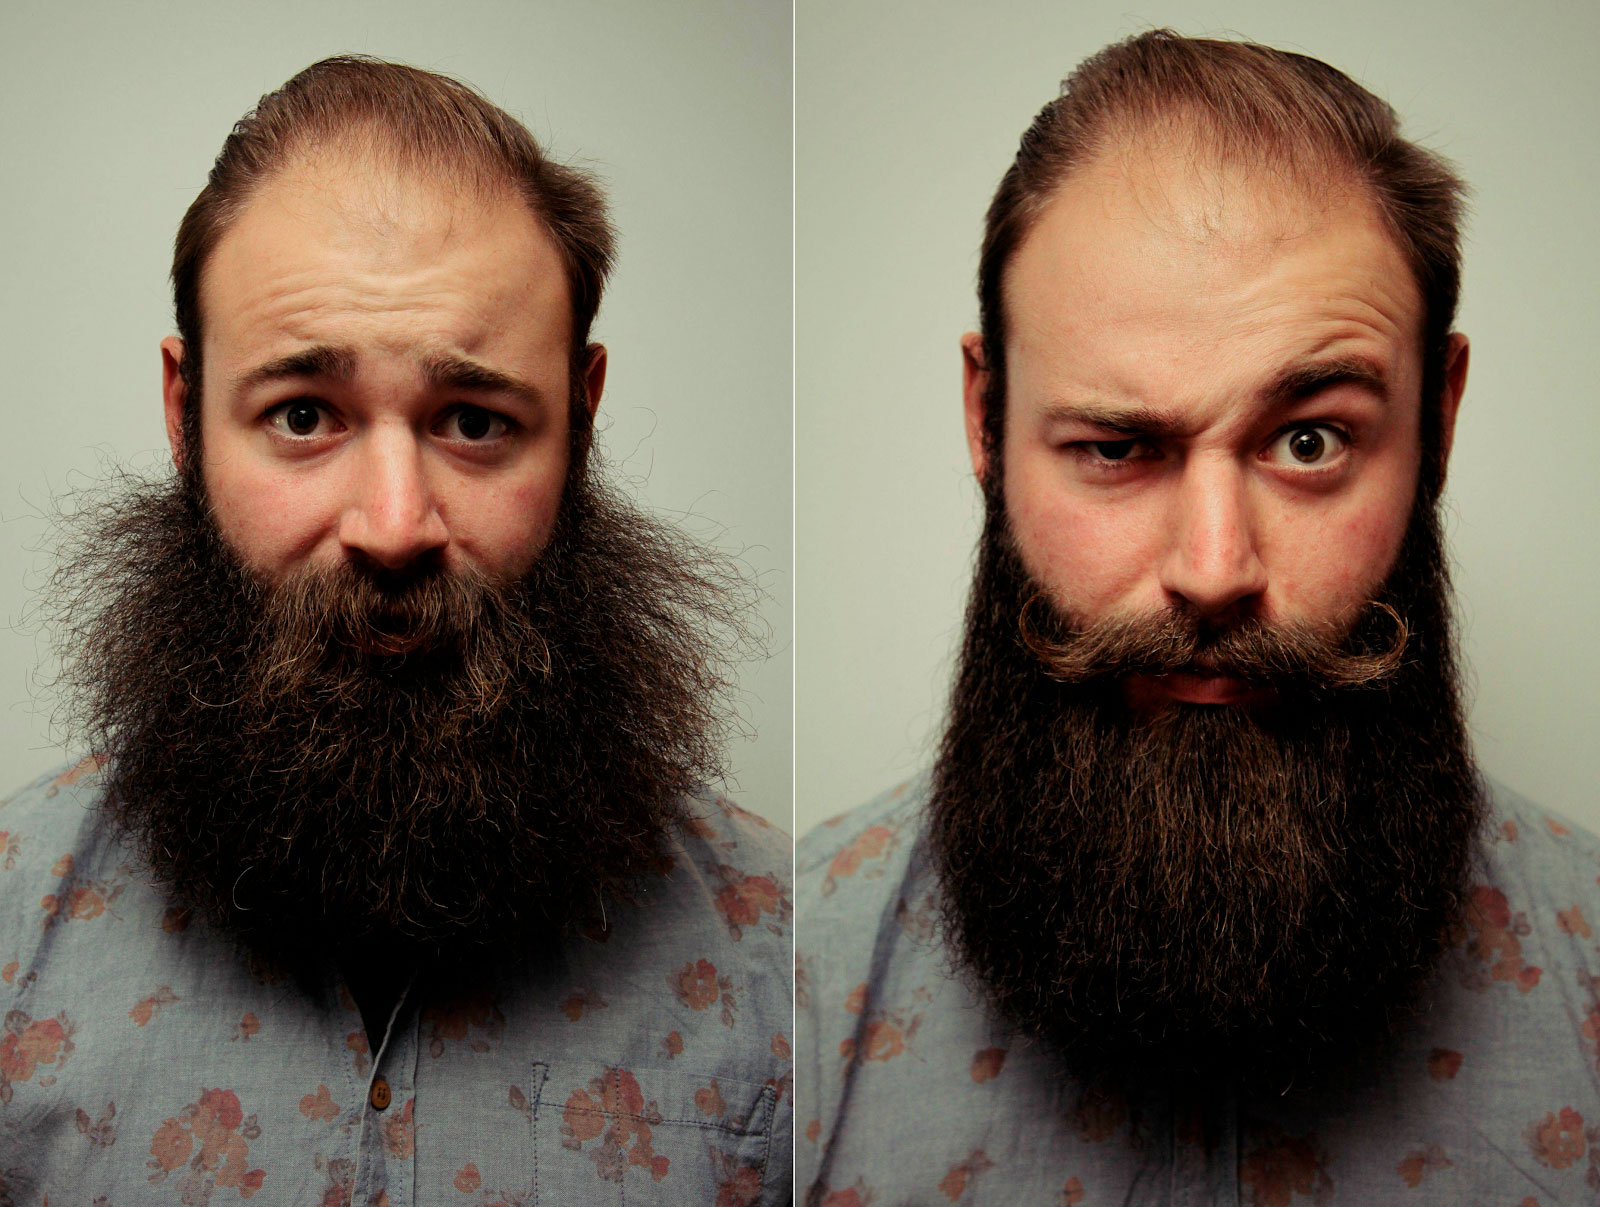 Как сделать воск для бороды в домашних условиях